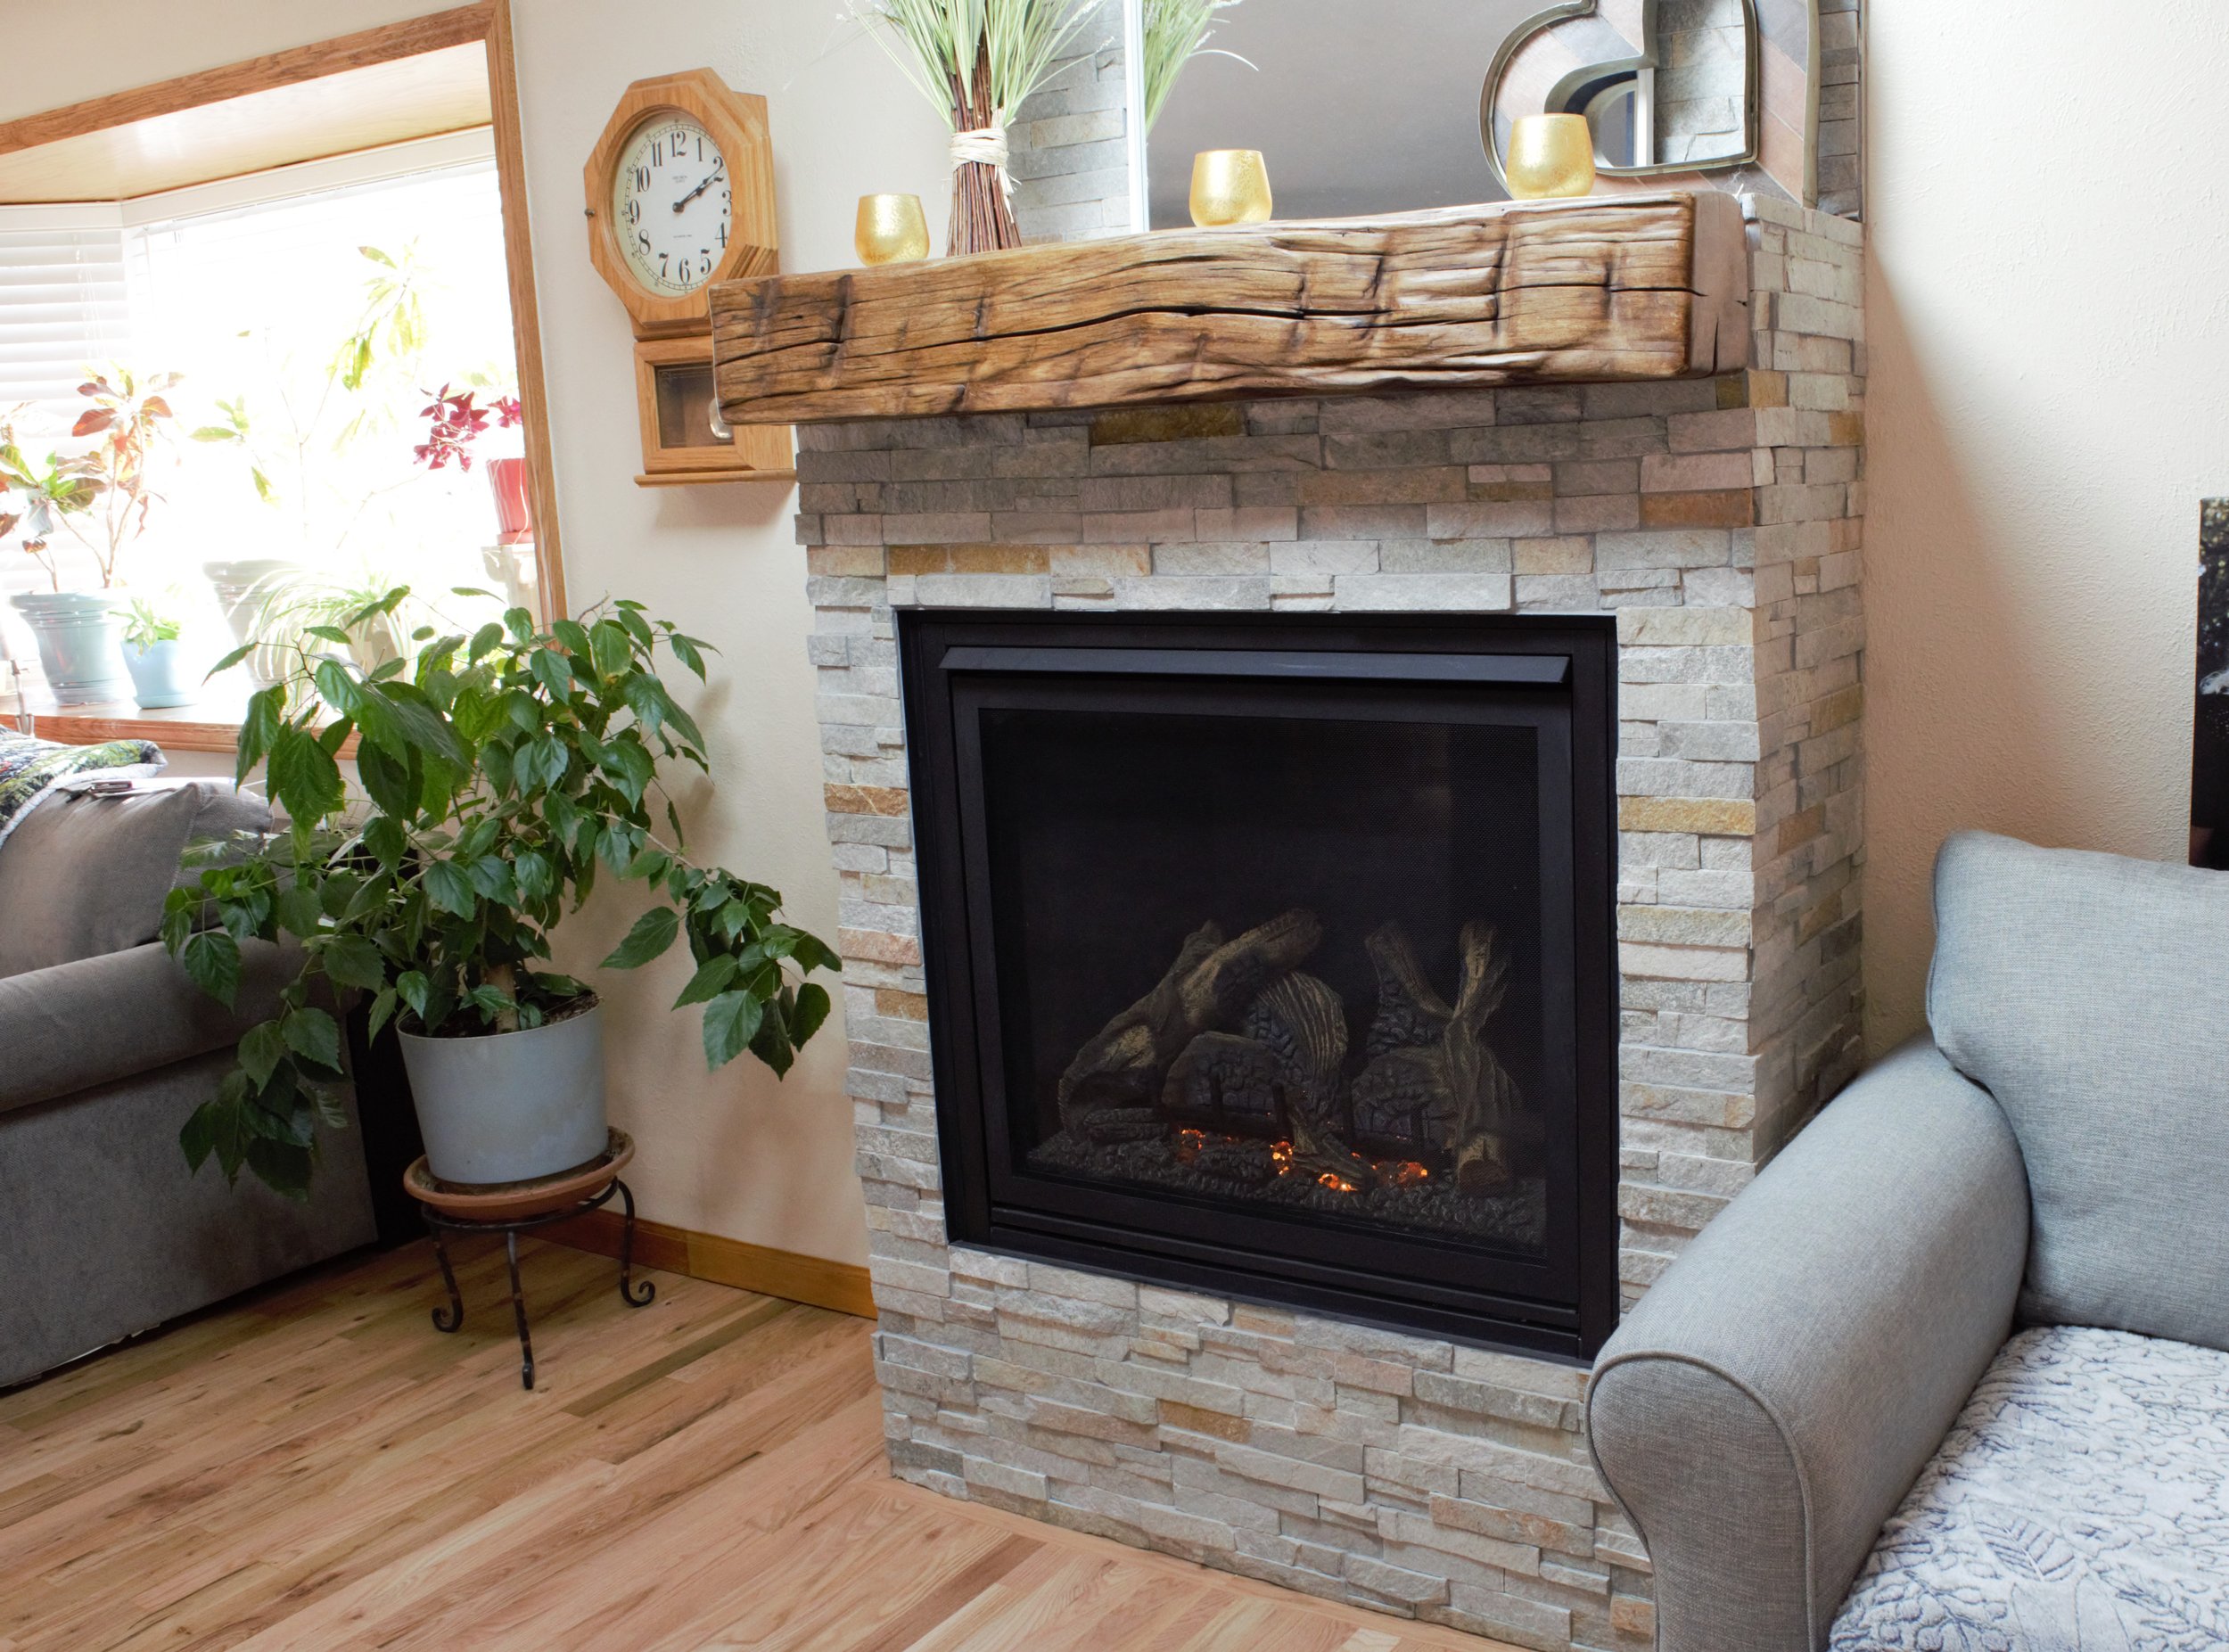 Kozy Heat Bayport 36 — Gas Fireplace